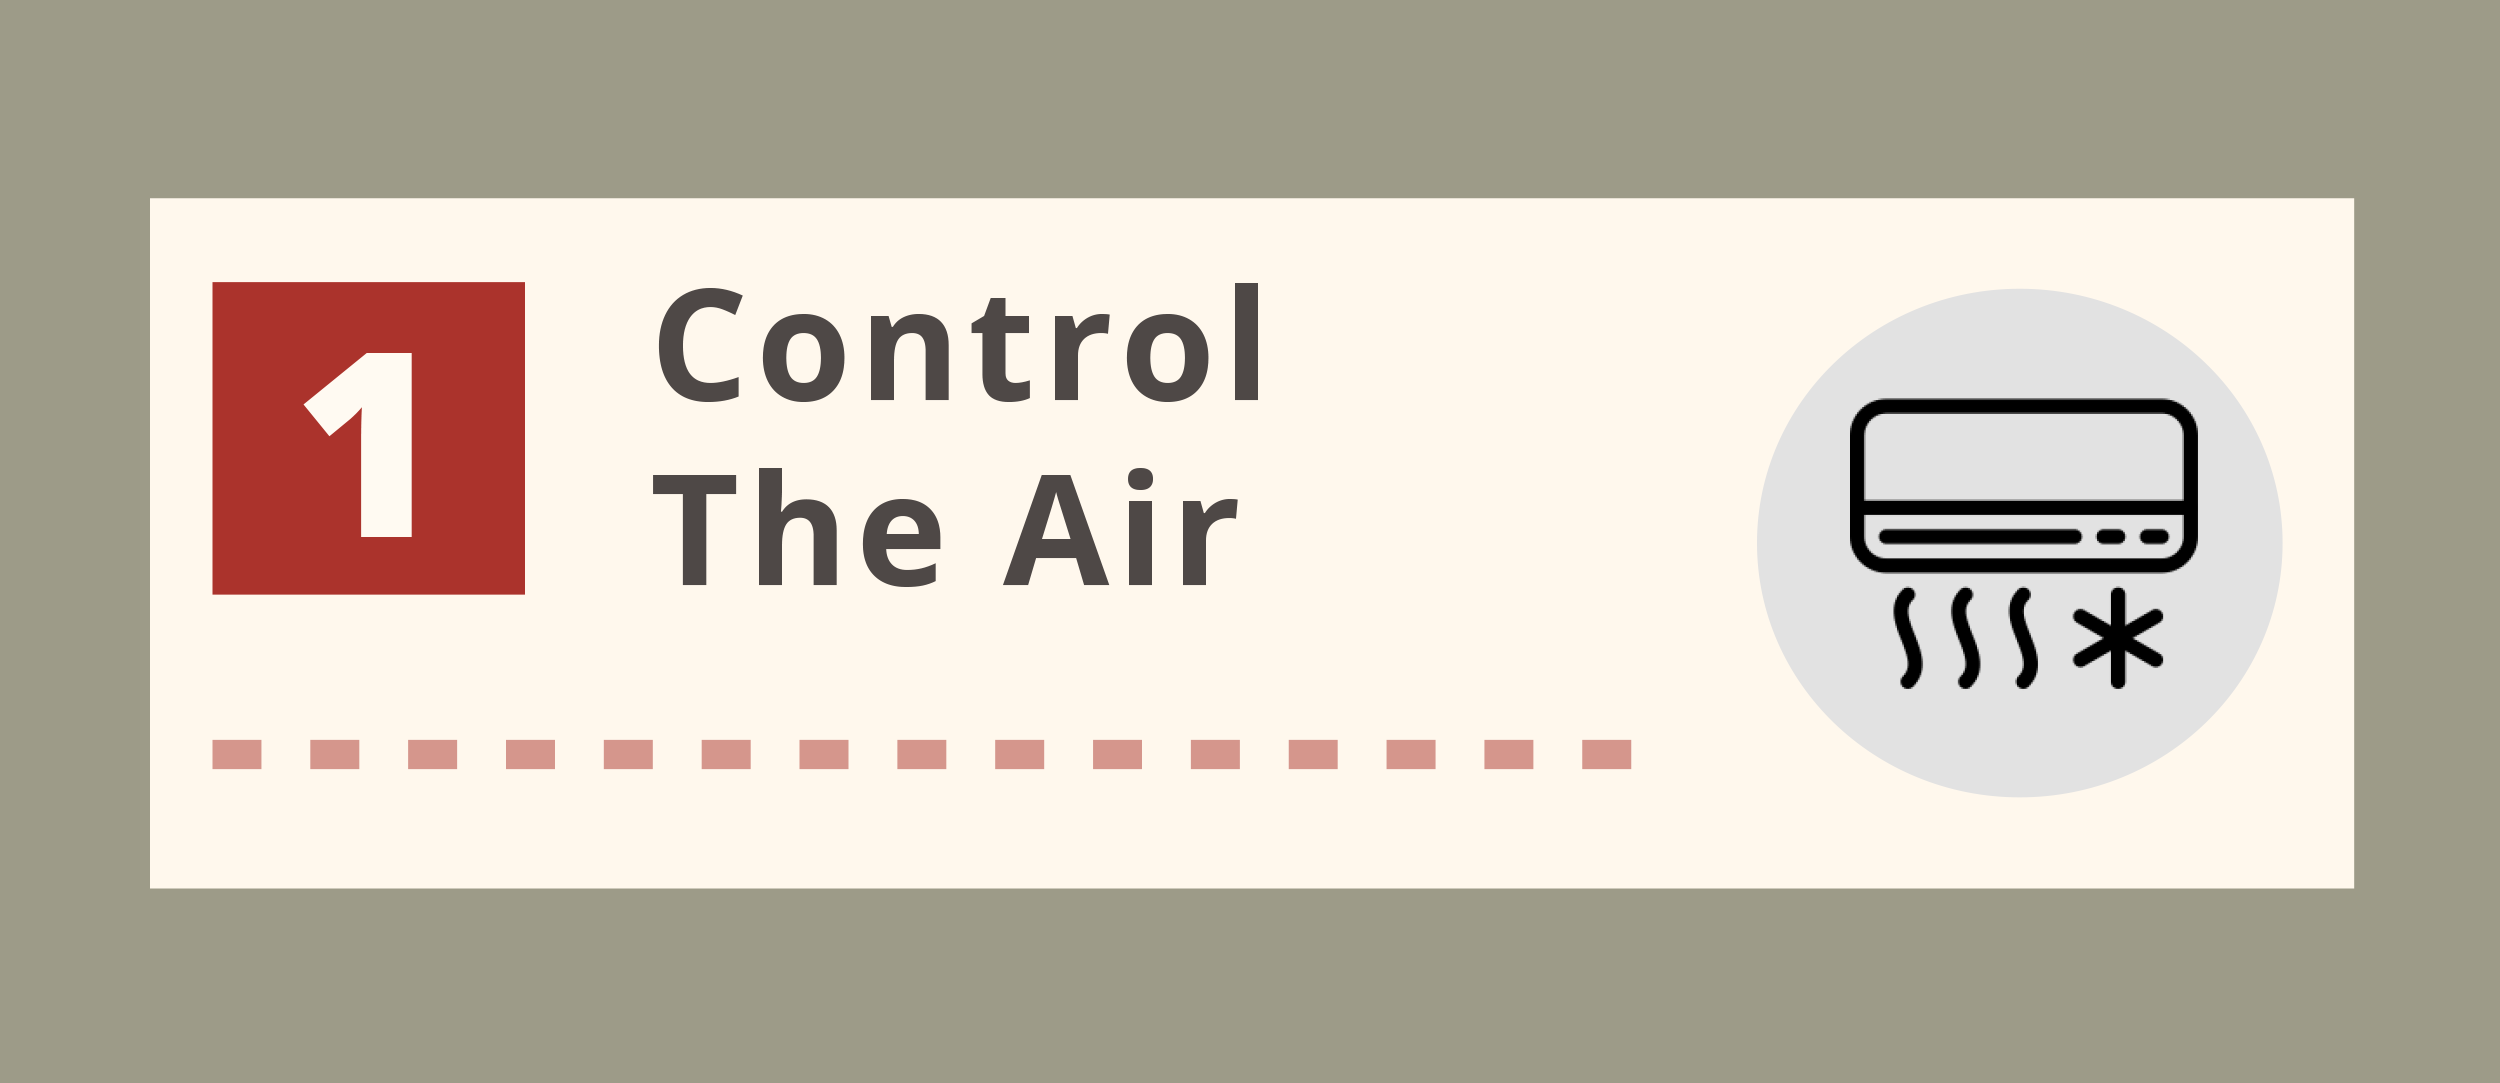 Control the Air